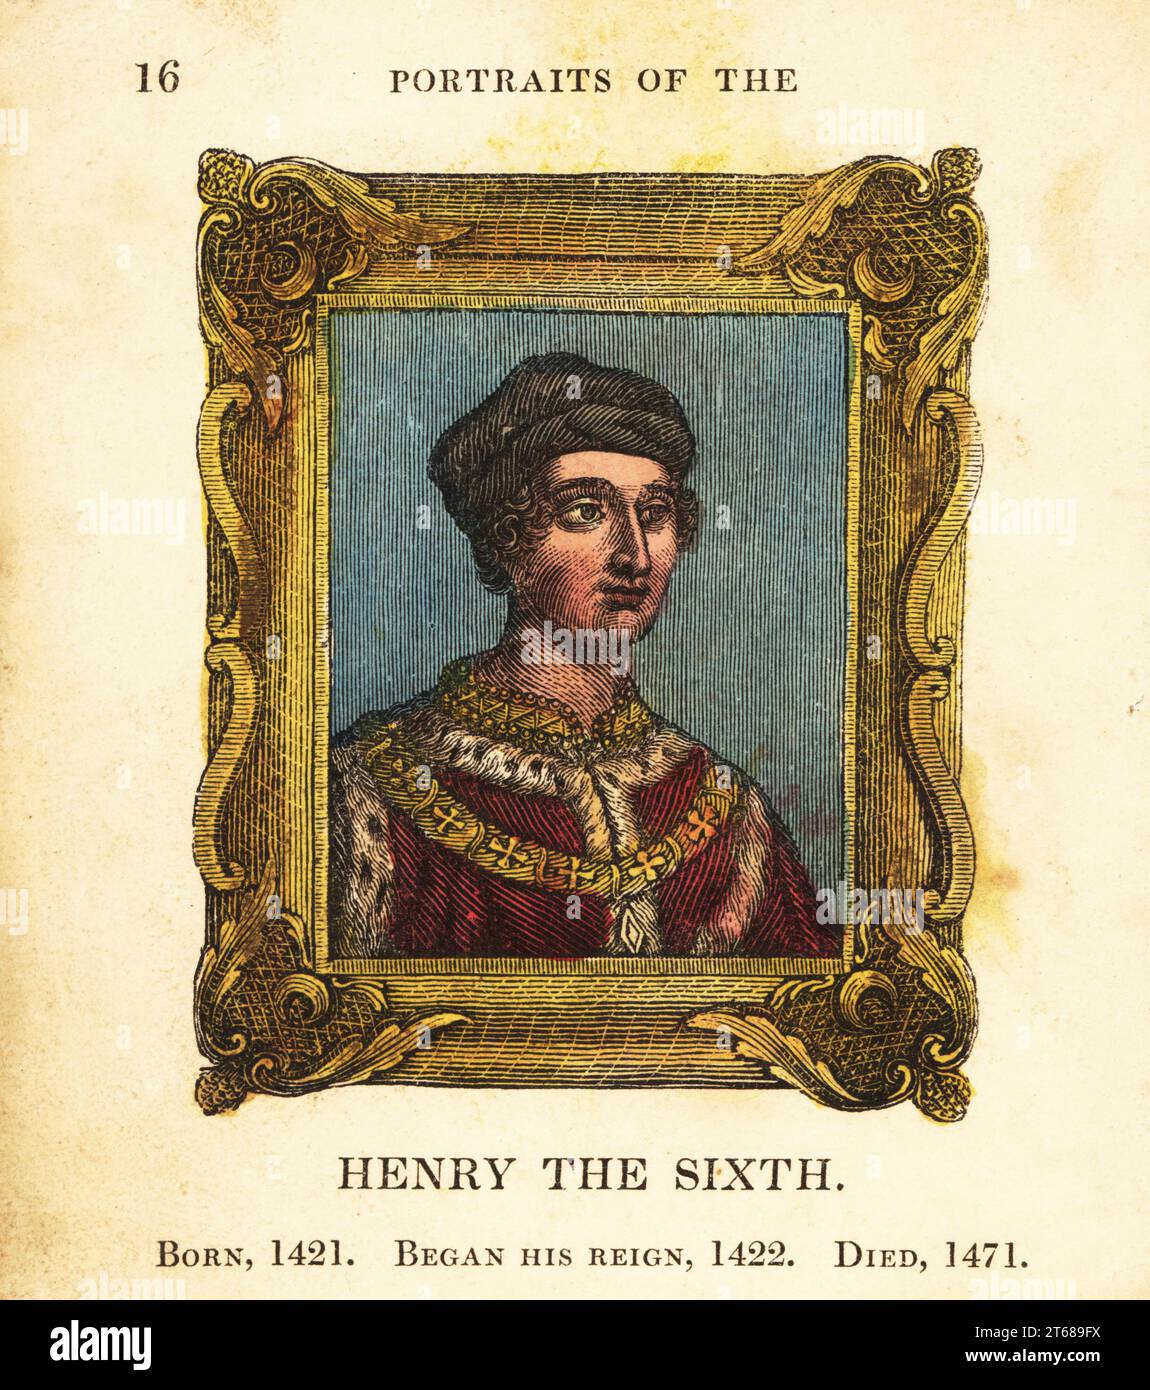 Portrait du roi Henri le Sixième, Henri VI d'Angleterre, né en 1421, a commencé le règne 1422 et est mort en 1471. En casquette, cape à bordure en fourrure avec chaîne dorée, dans un cadre orné. Gravure faite à la main par Cosmo Armstrong de Portraits et personnages des rois d'Angleterre, de William le Conquérant à George le troisième, John Harris, Londres, 1830. Banque D'Images